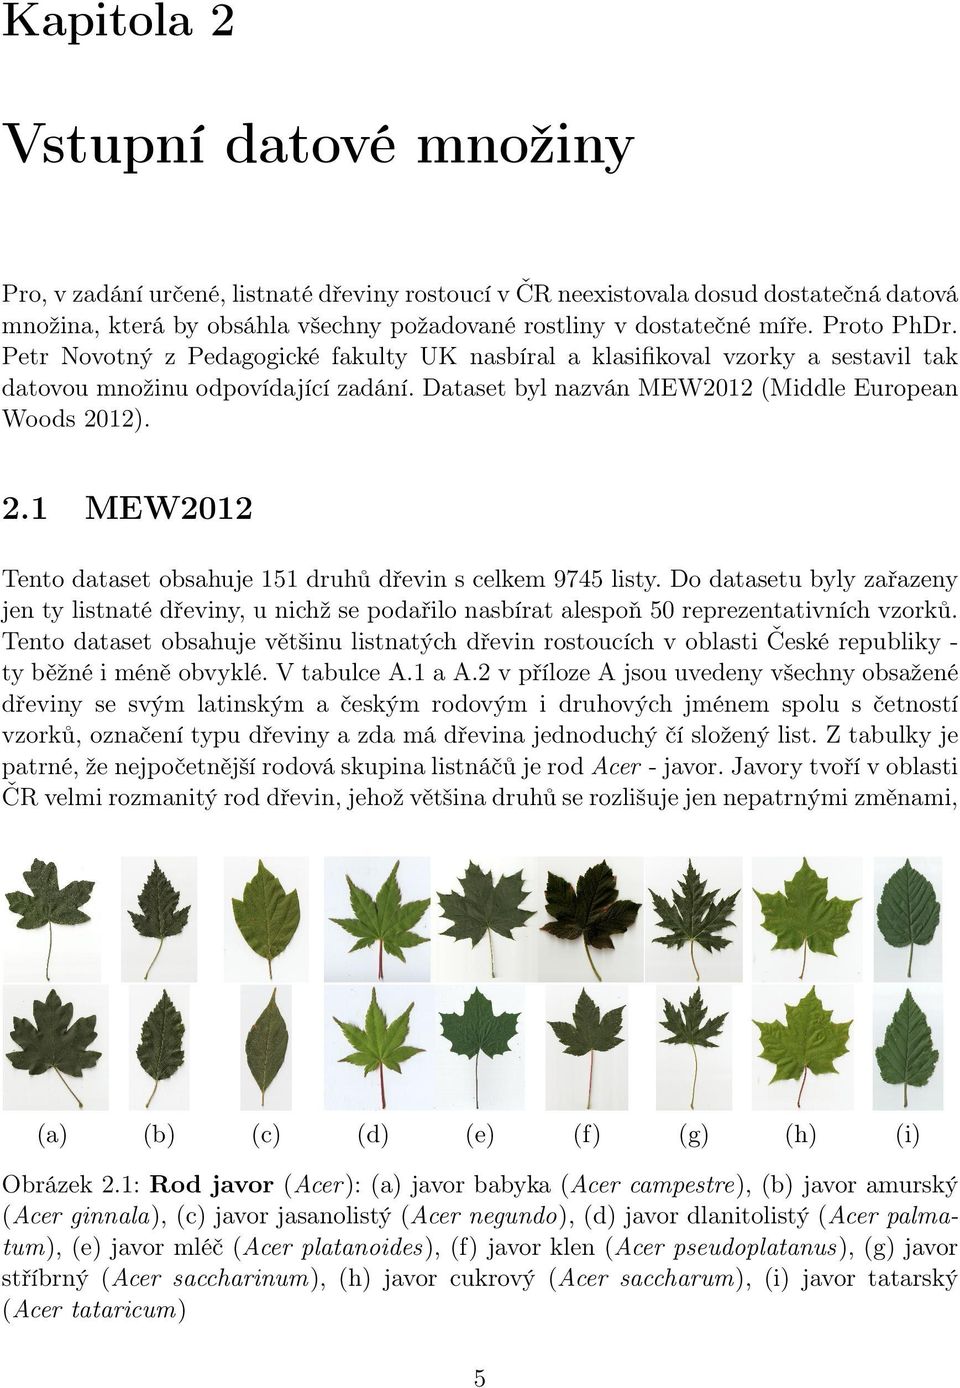 Rozpoznávání druhů dřevin rostoucích v České republice podle tvaru listu.  Ivana Váňová - PDF Free Download